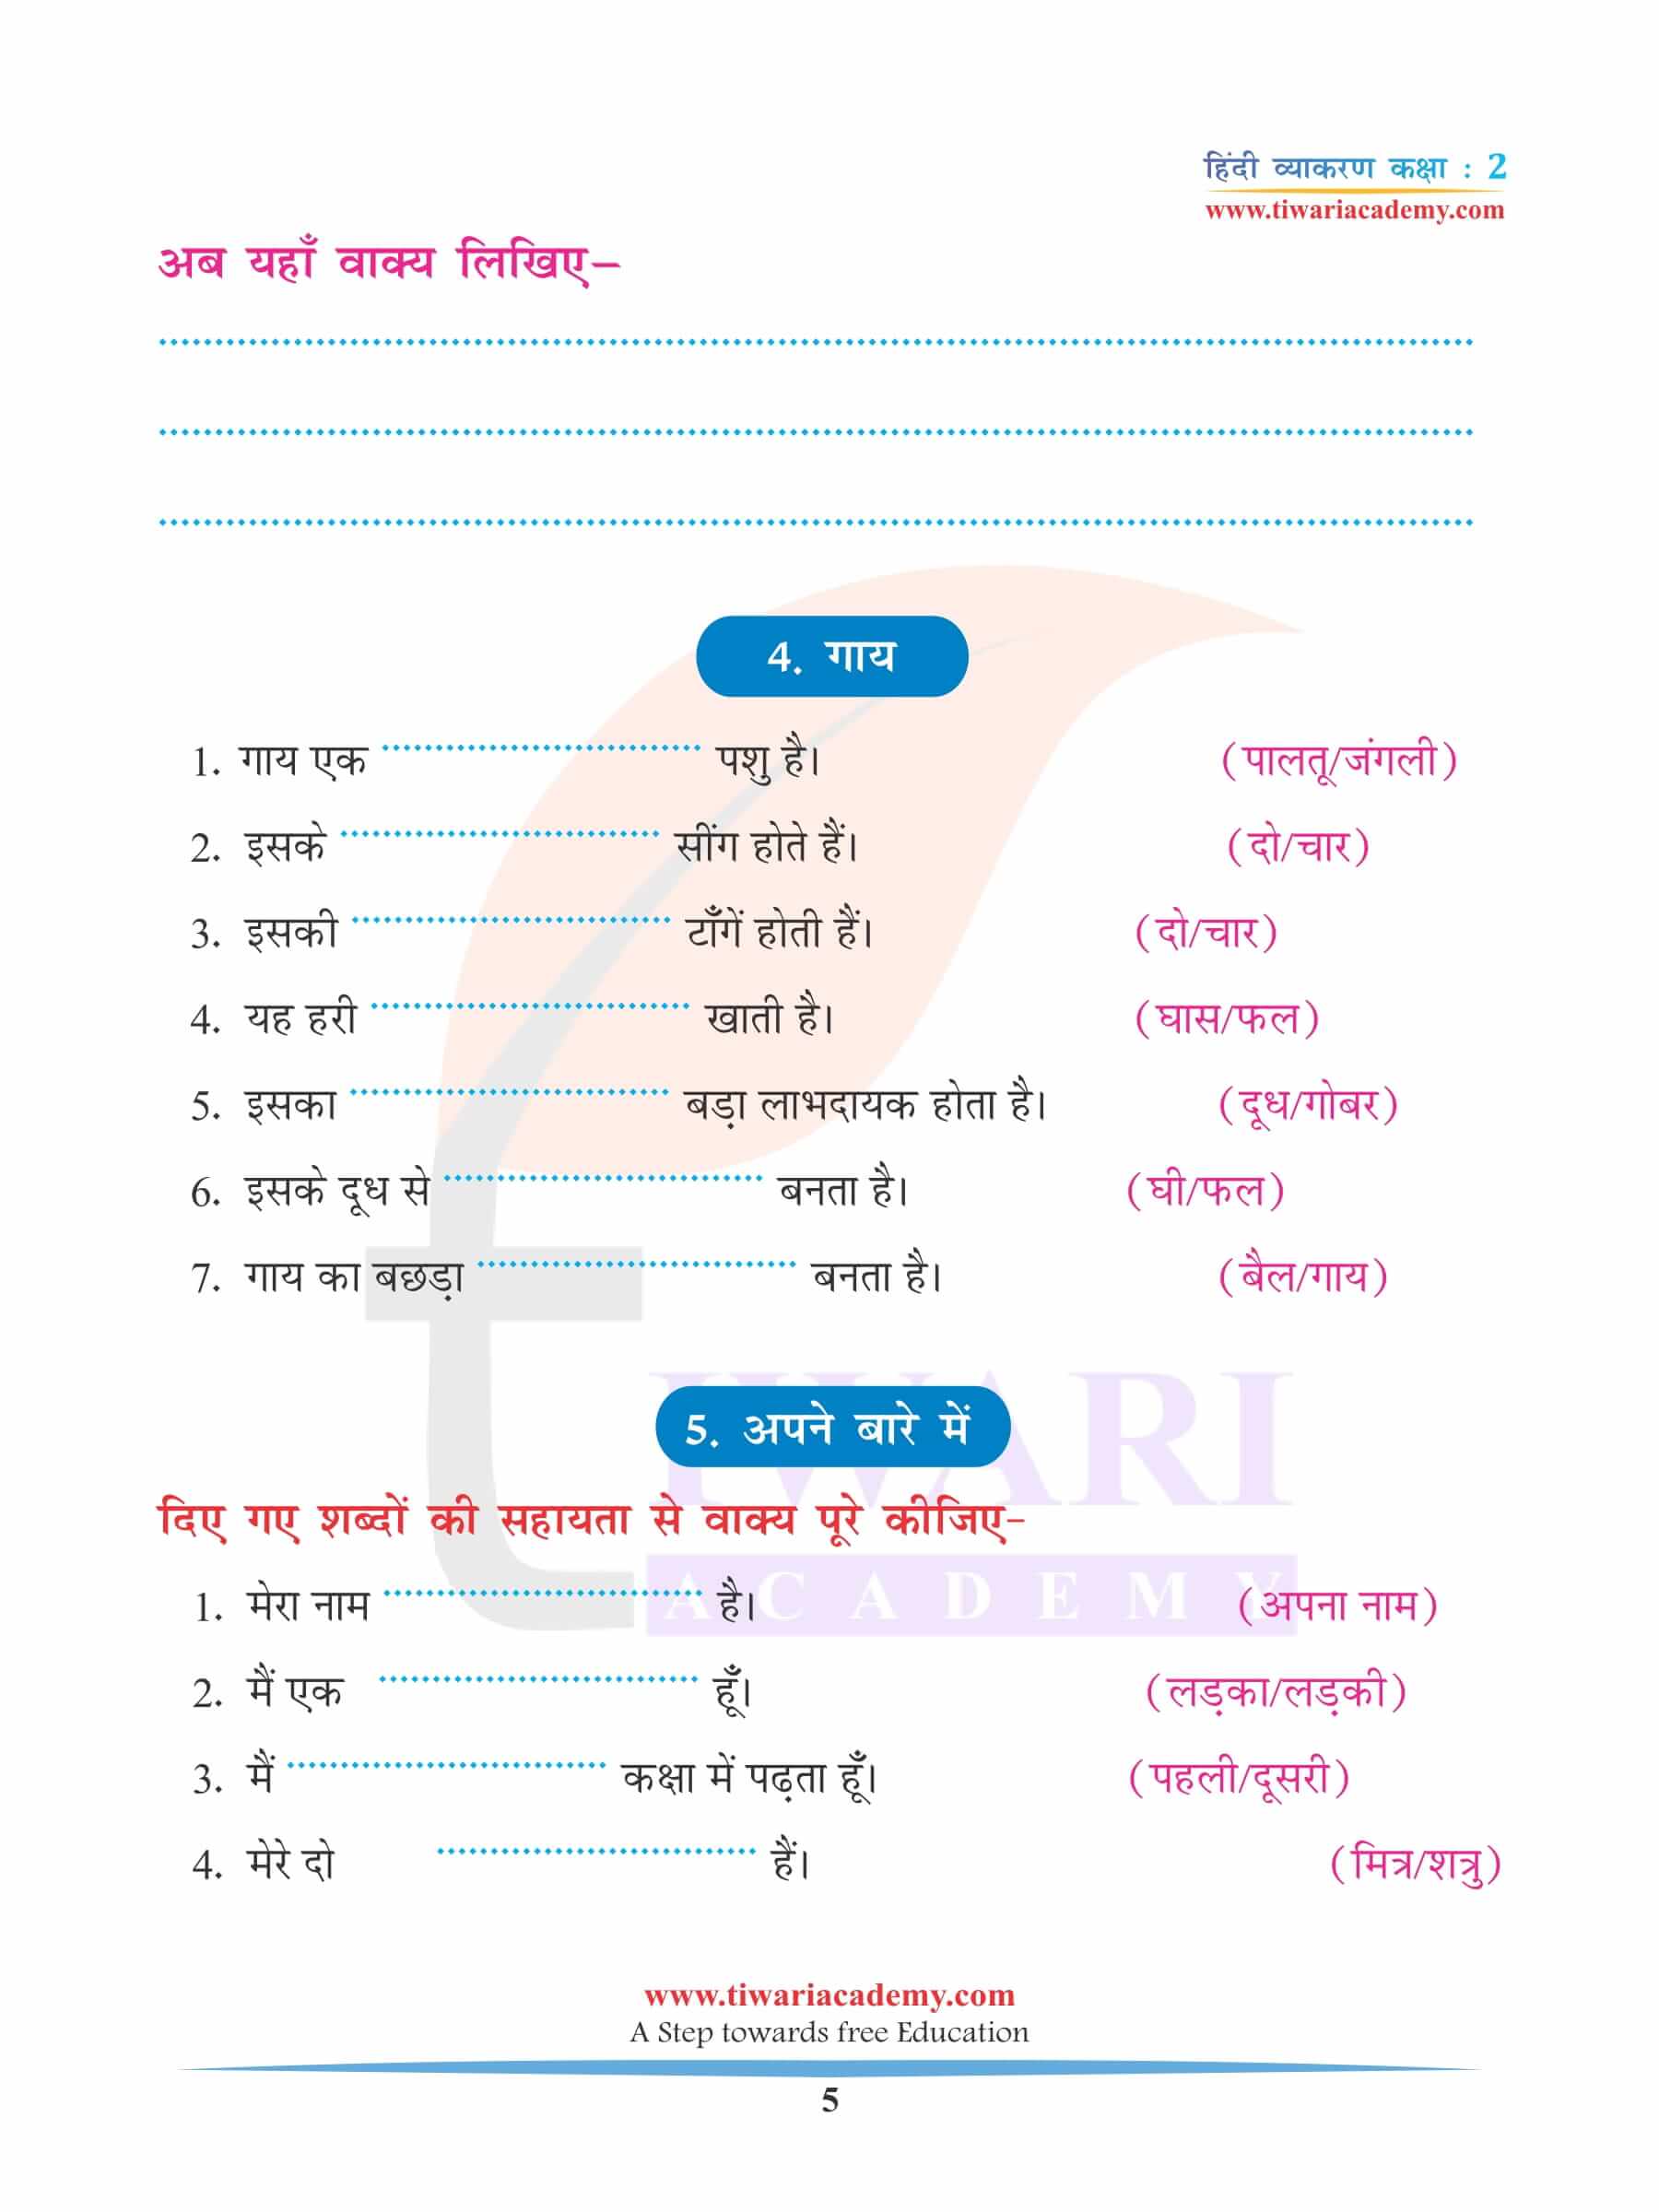 कक्षा 2 हिंदी व्याकरण अध्याय 13 लेखन अनुच्छेद लेखन